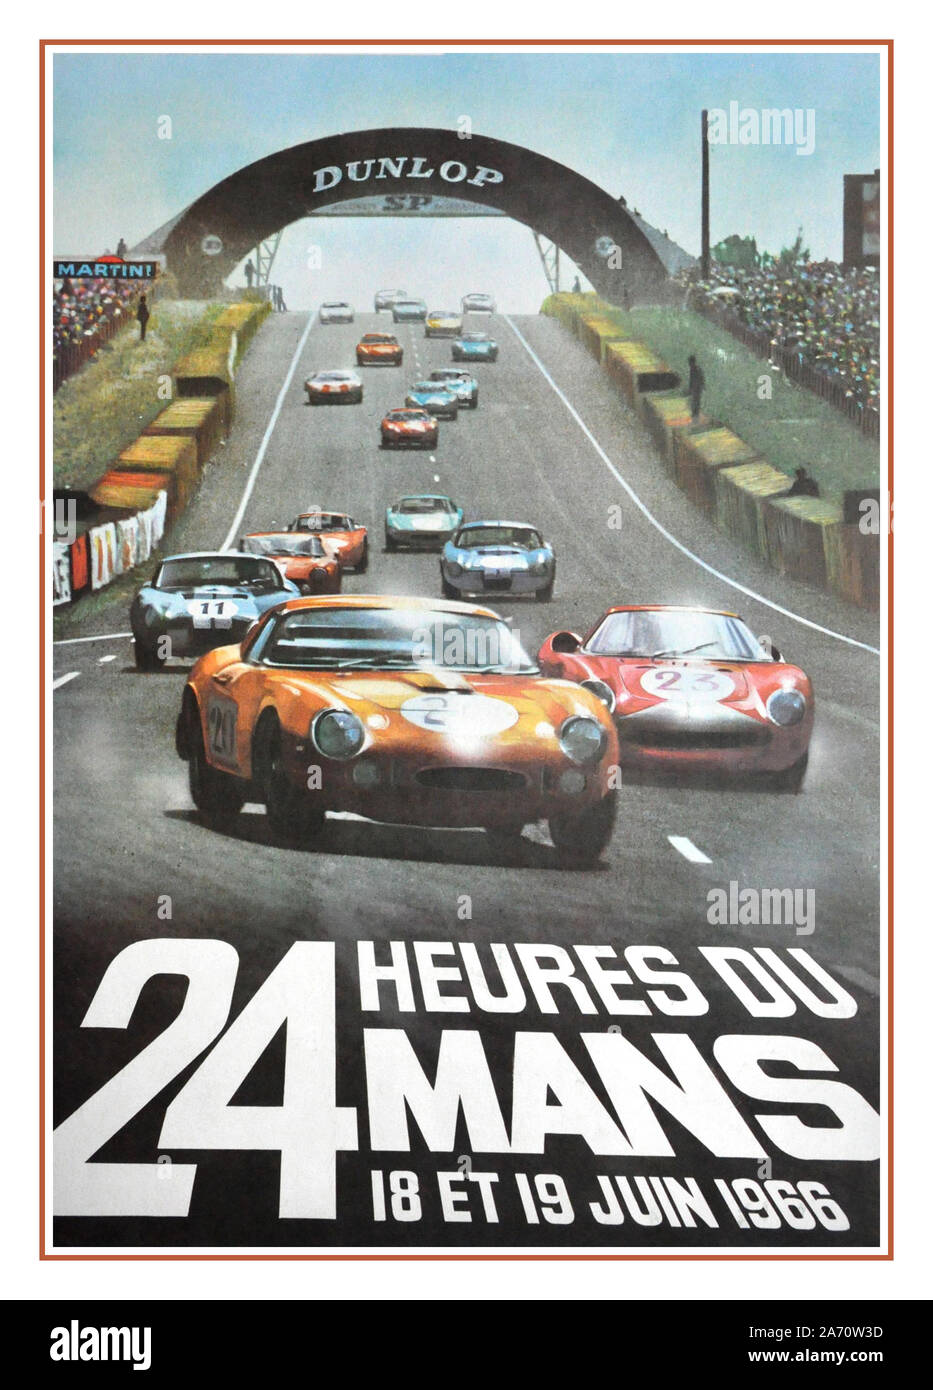 L'annata 1966 Le Mans 24 ore di gara Vintage Poster 18-19Giugno 1966 24 Heures du Mans era anche il settimo round del Mondiale 1966 Sportscar stagione. Questo è stato il primo nel complesso e molto celebre vincere a Le Mans per la Ford GT40 con Bruce McLaren e Chris Amon nonché la prima vittoria assoluta per un costruttore americano Foto Stock